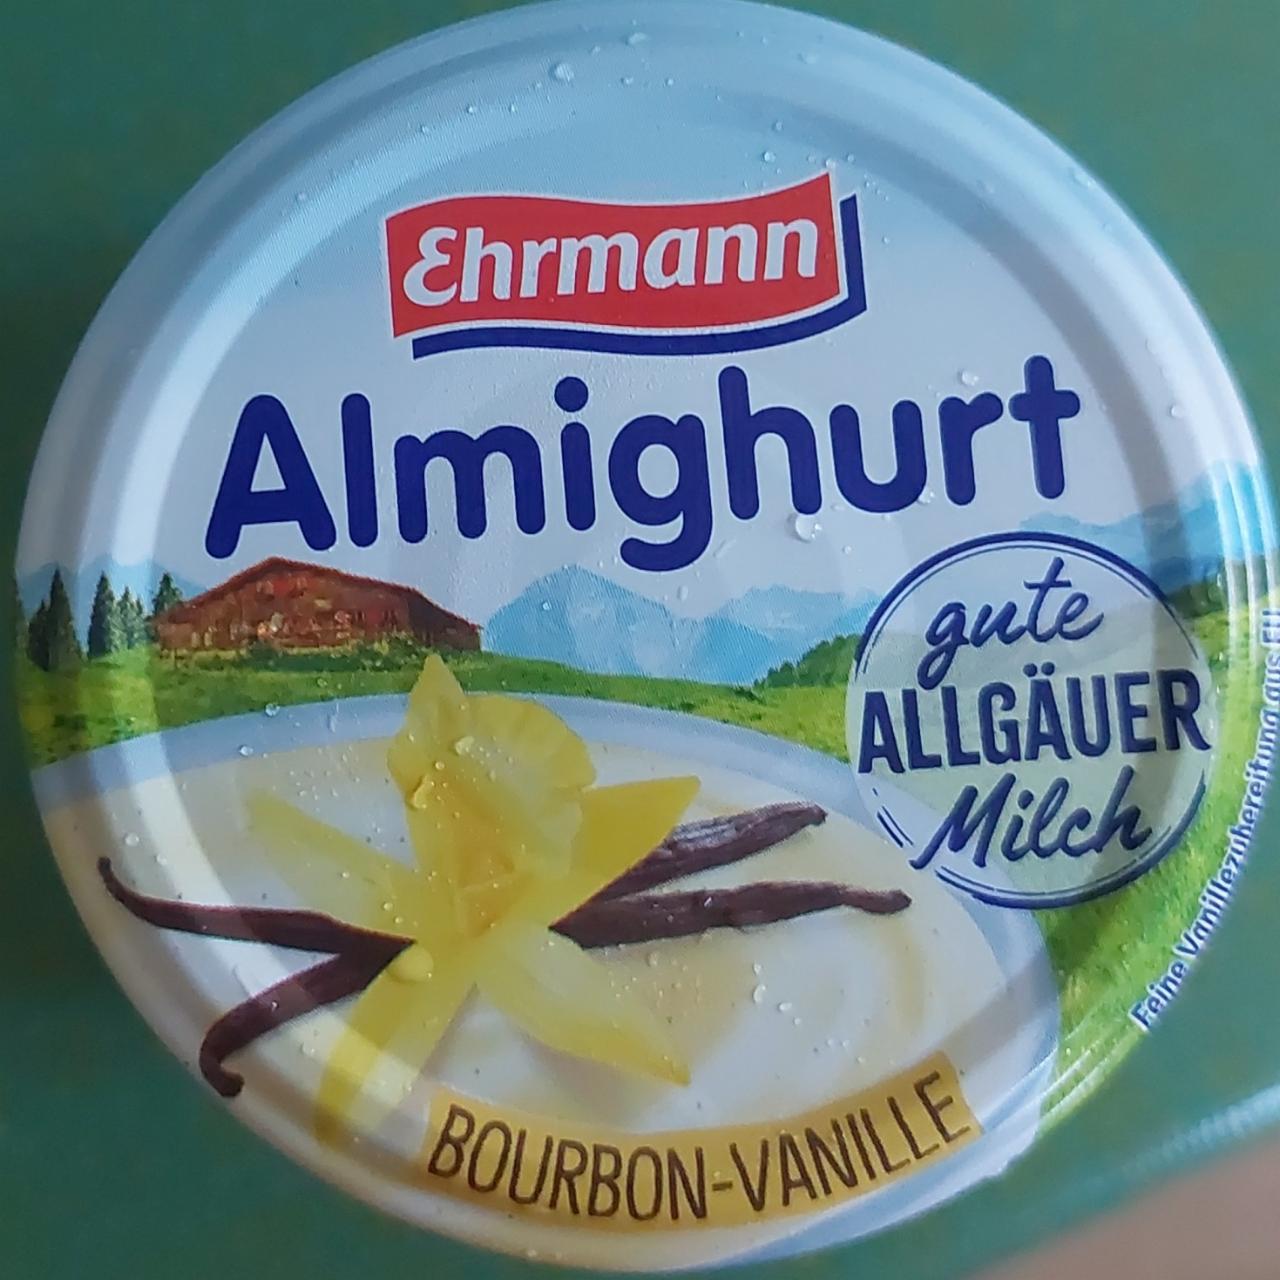 Фото - ванильный йогурт Almighurt Ehrmann